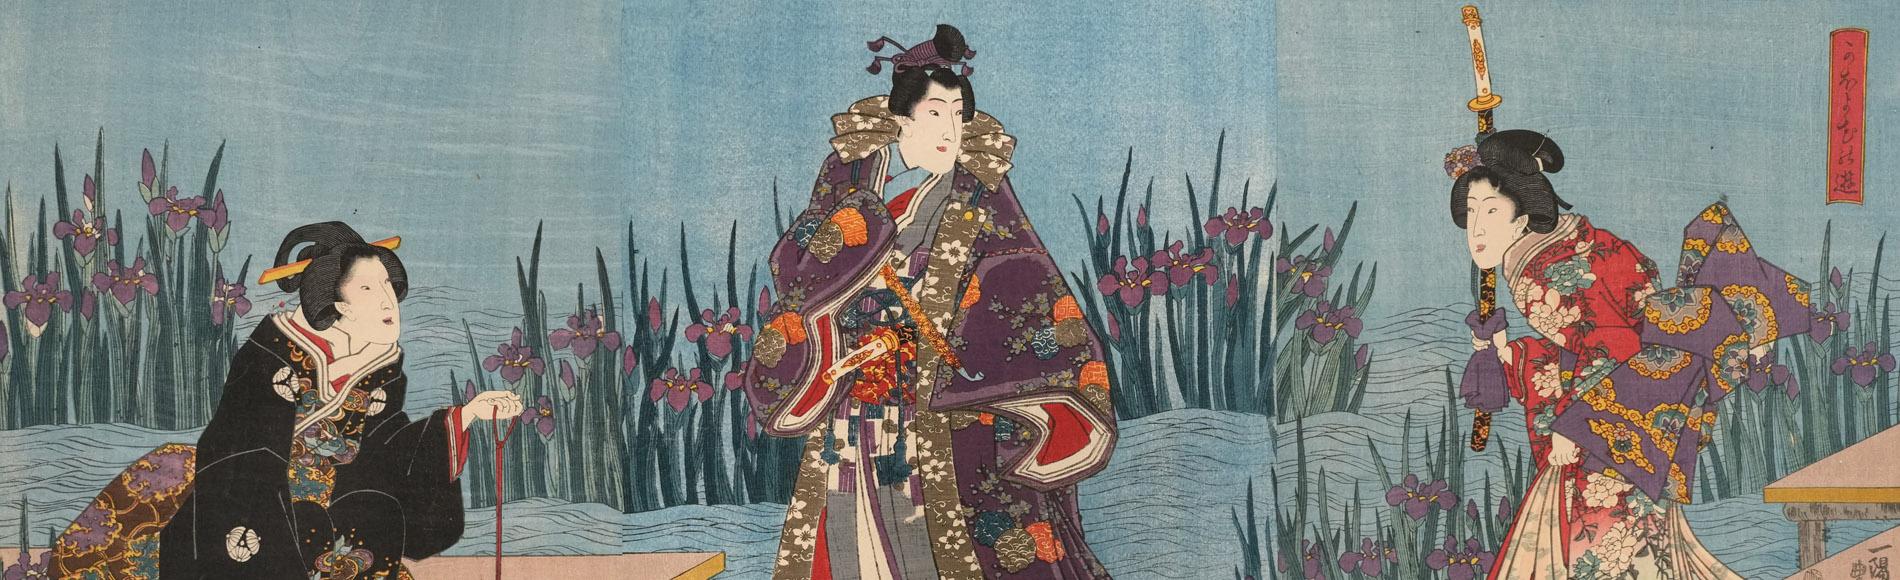 Amusements Among the Irises by Toyokuni III